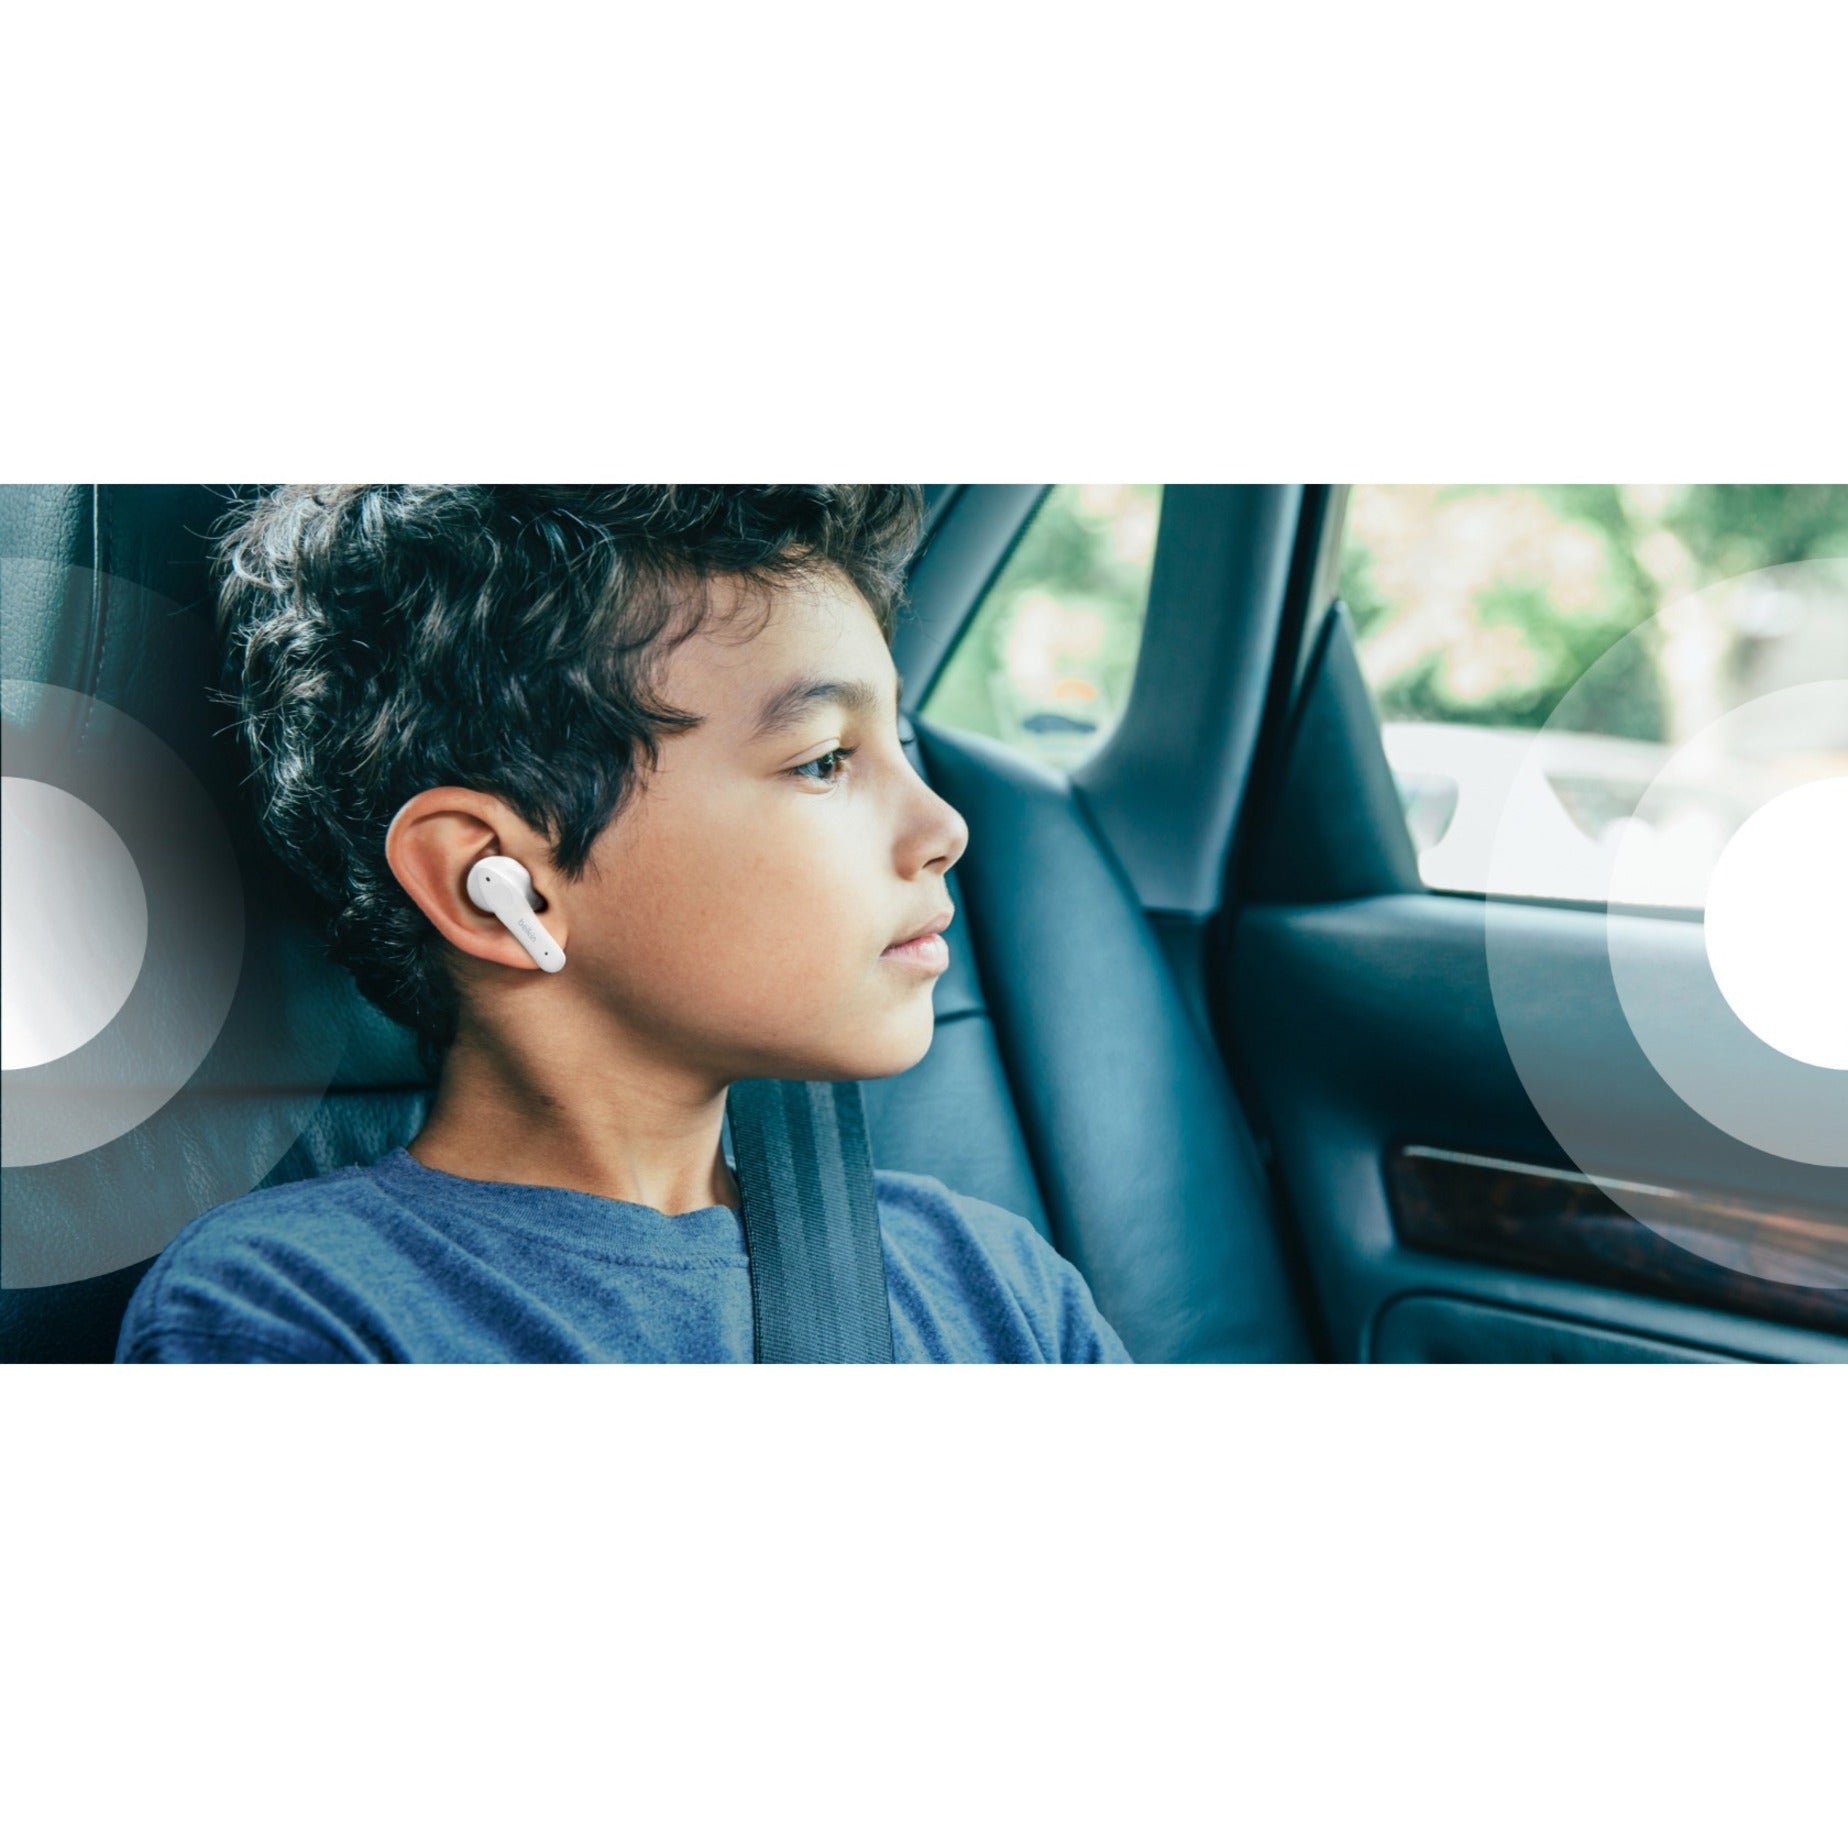 Belkin PAC003BTWH SOUNDFORM Nano Wireless Earbuds für Kinder Kristallklarer Klang Wiederaufladbarer Akku Weiß